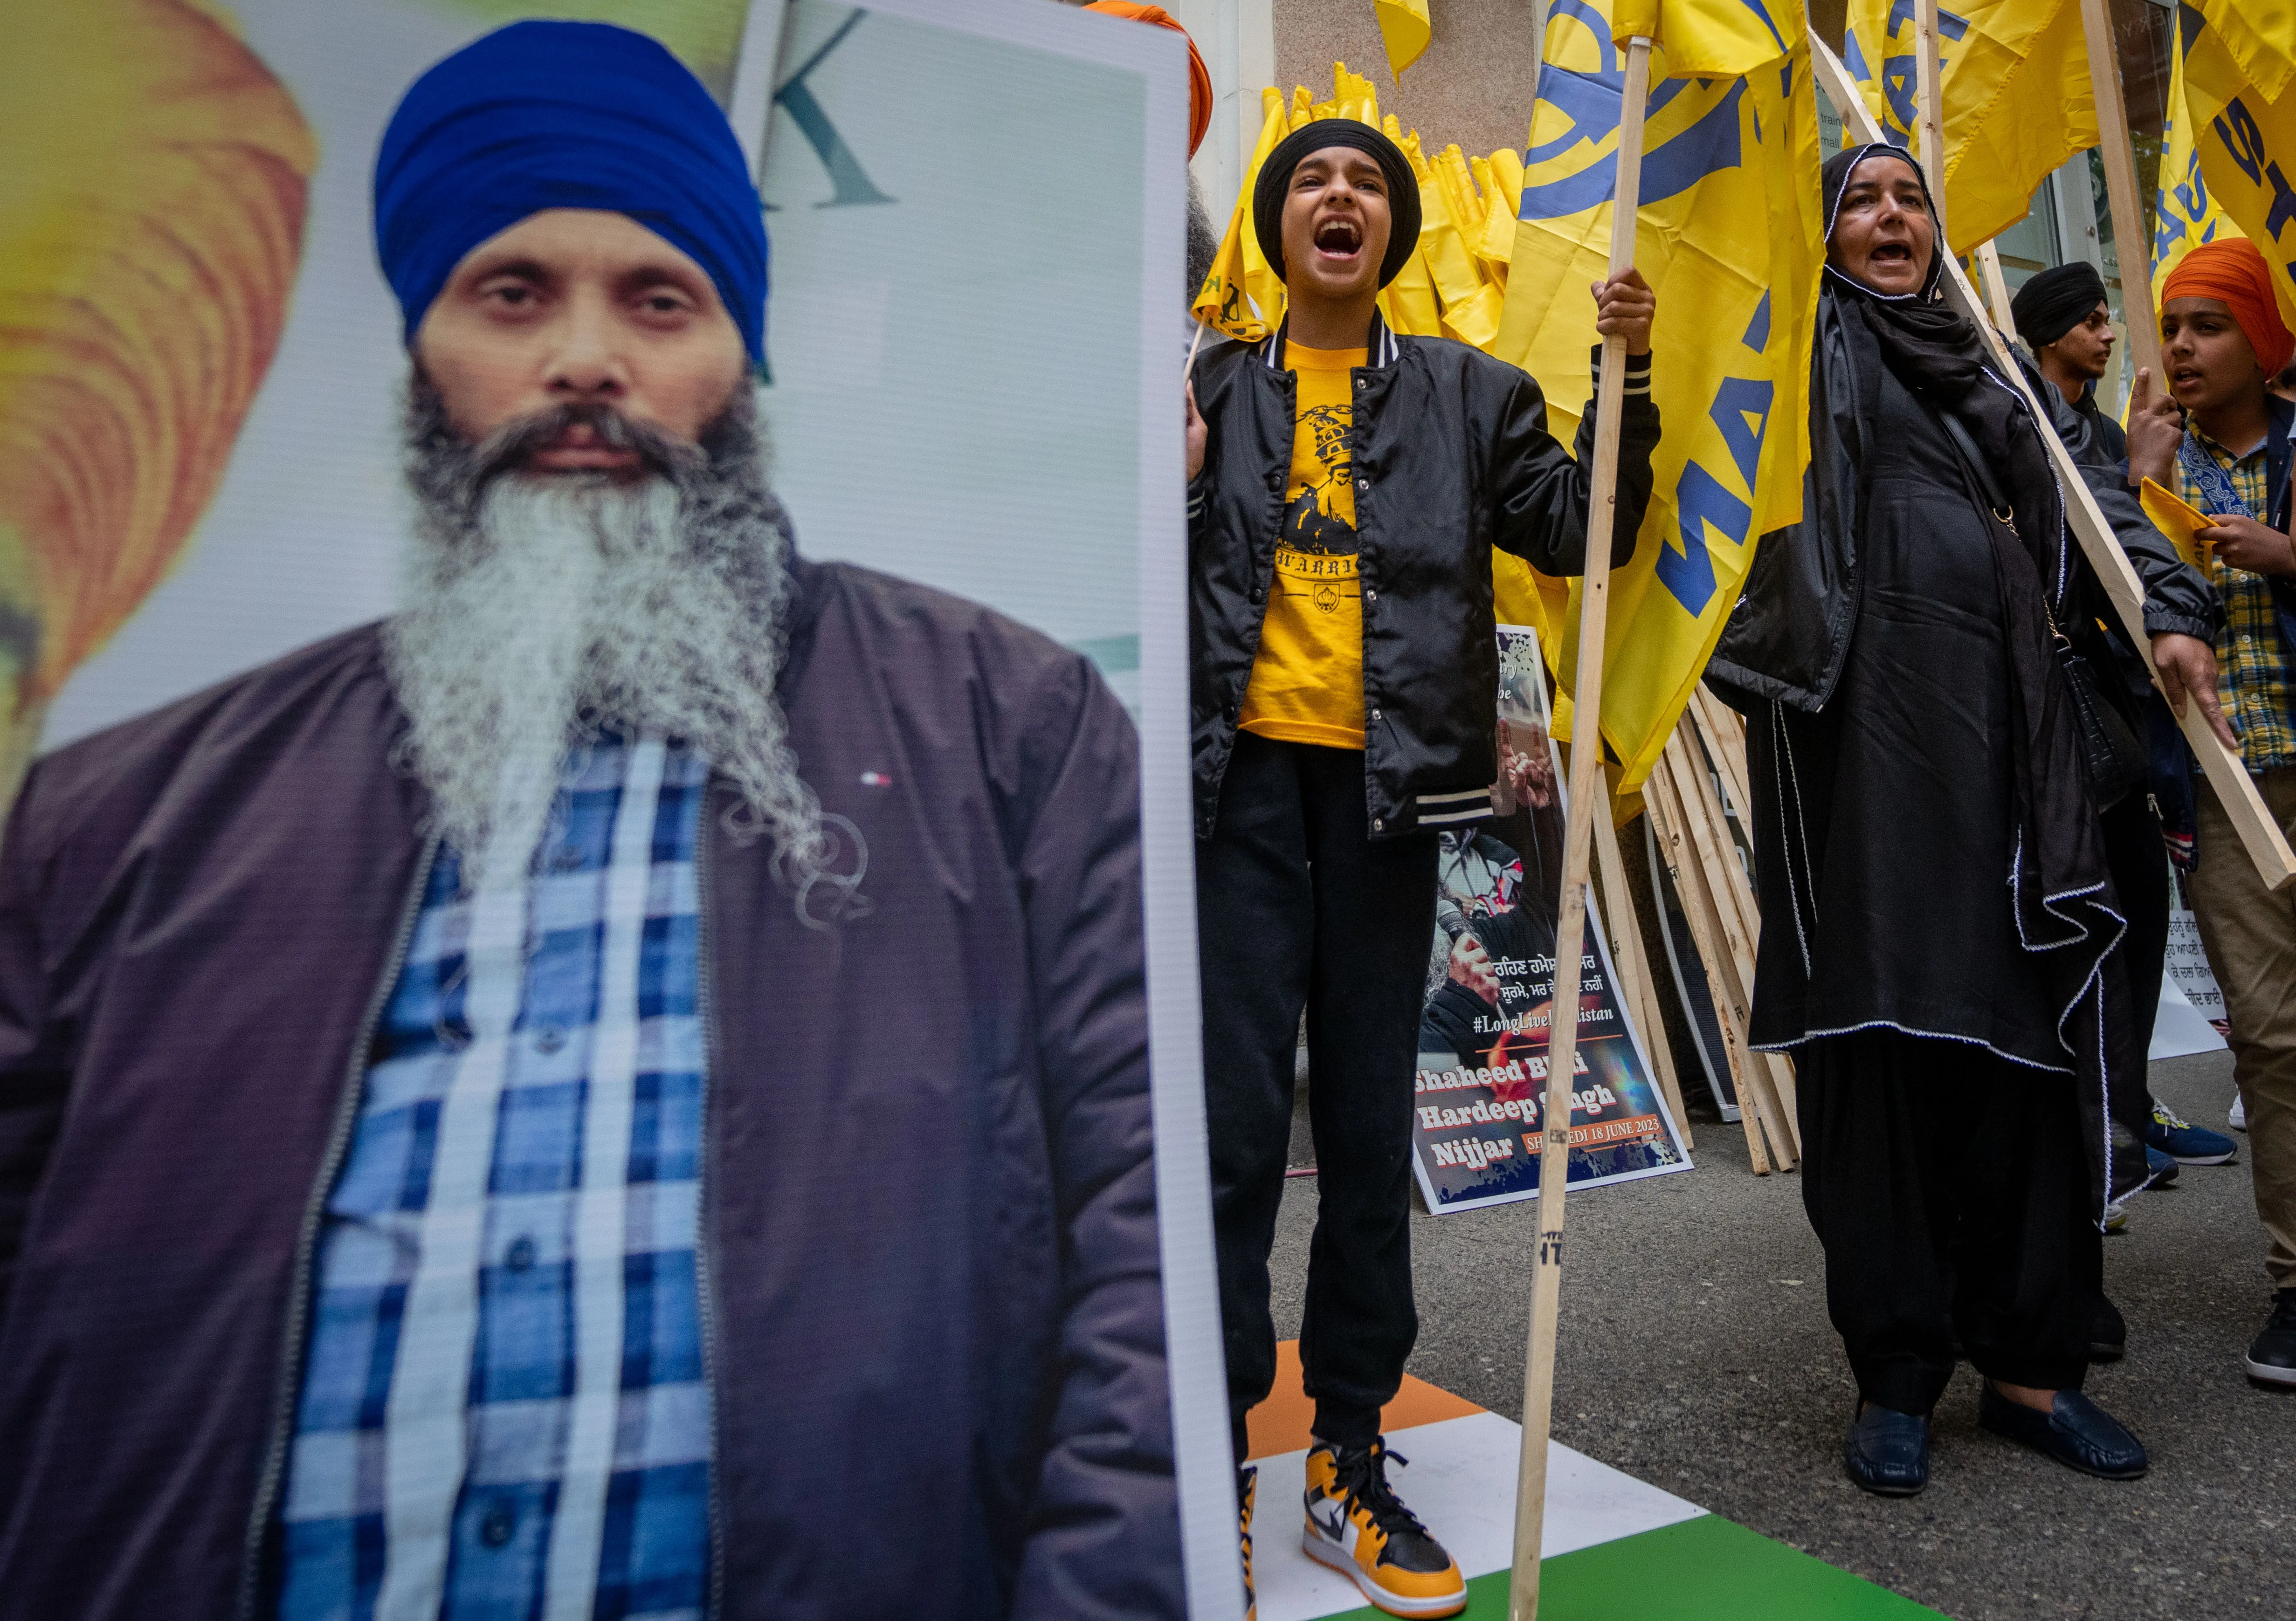 India mohon akuzat për vrasjen e liderit Sikh në Kanada